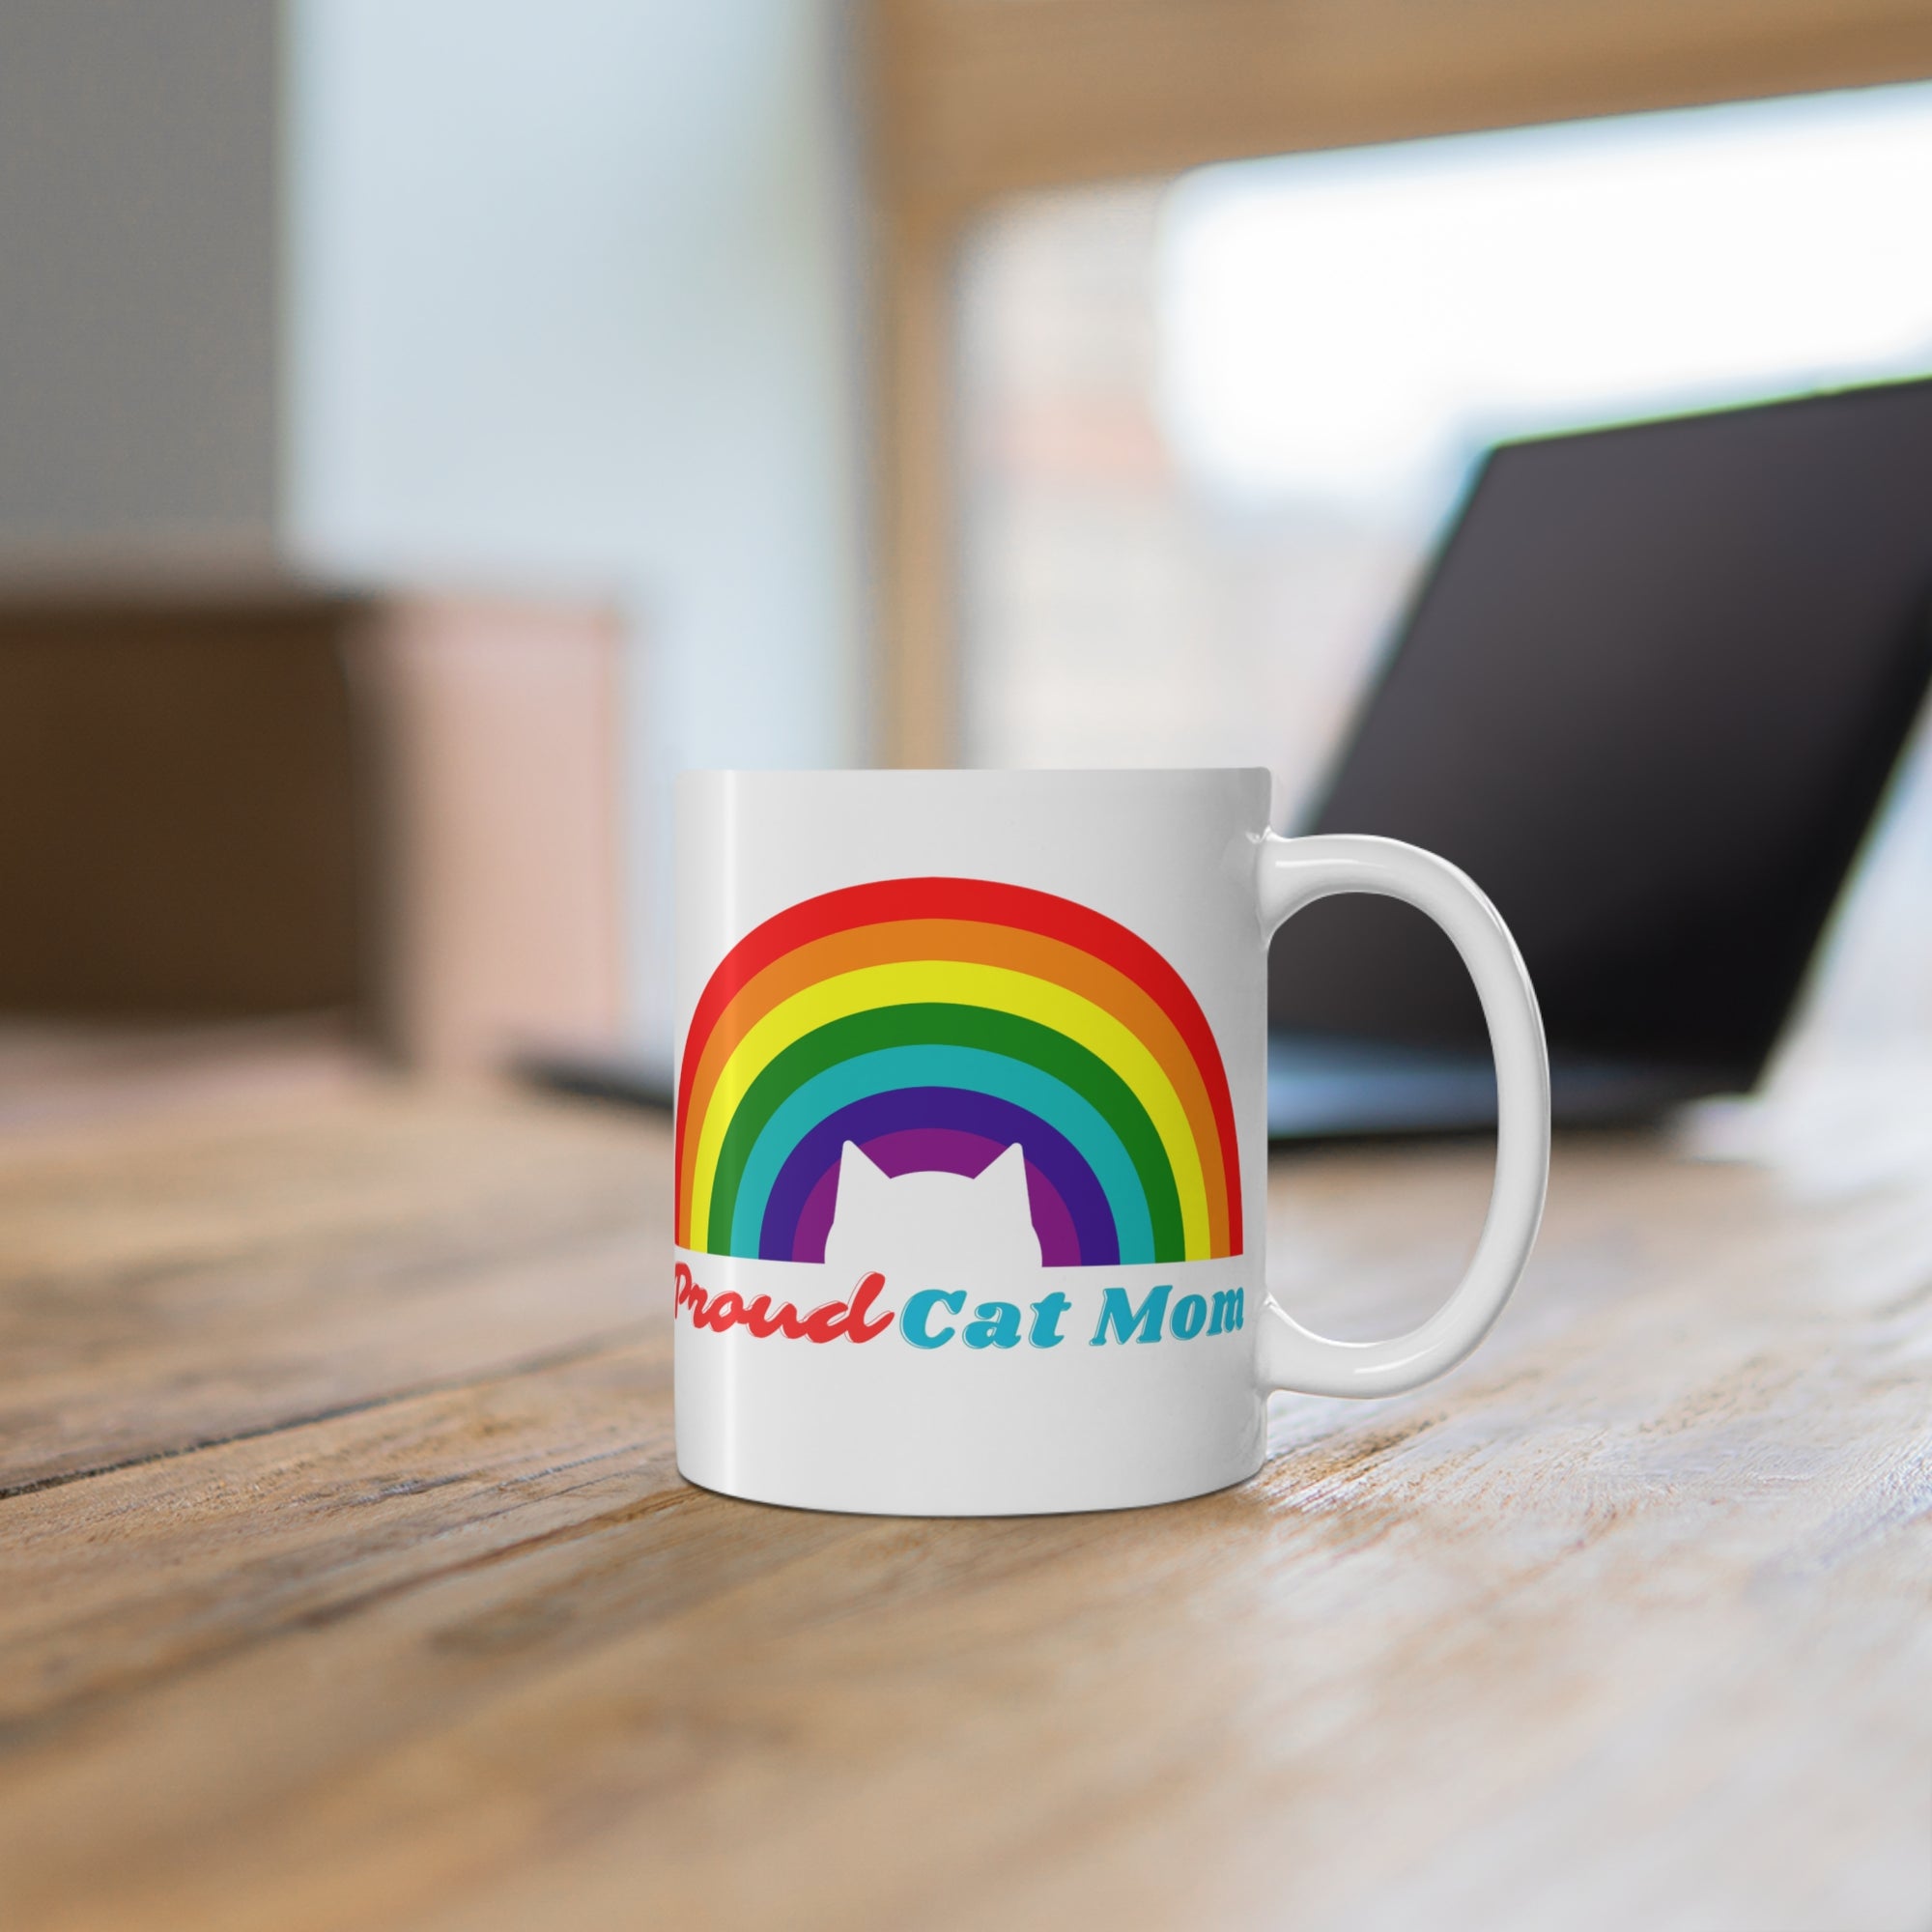 Proud Cat Dad or Proud Cat Mom - Rainbow Cat Coffee Mug